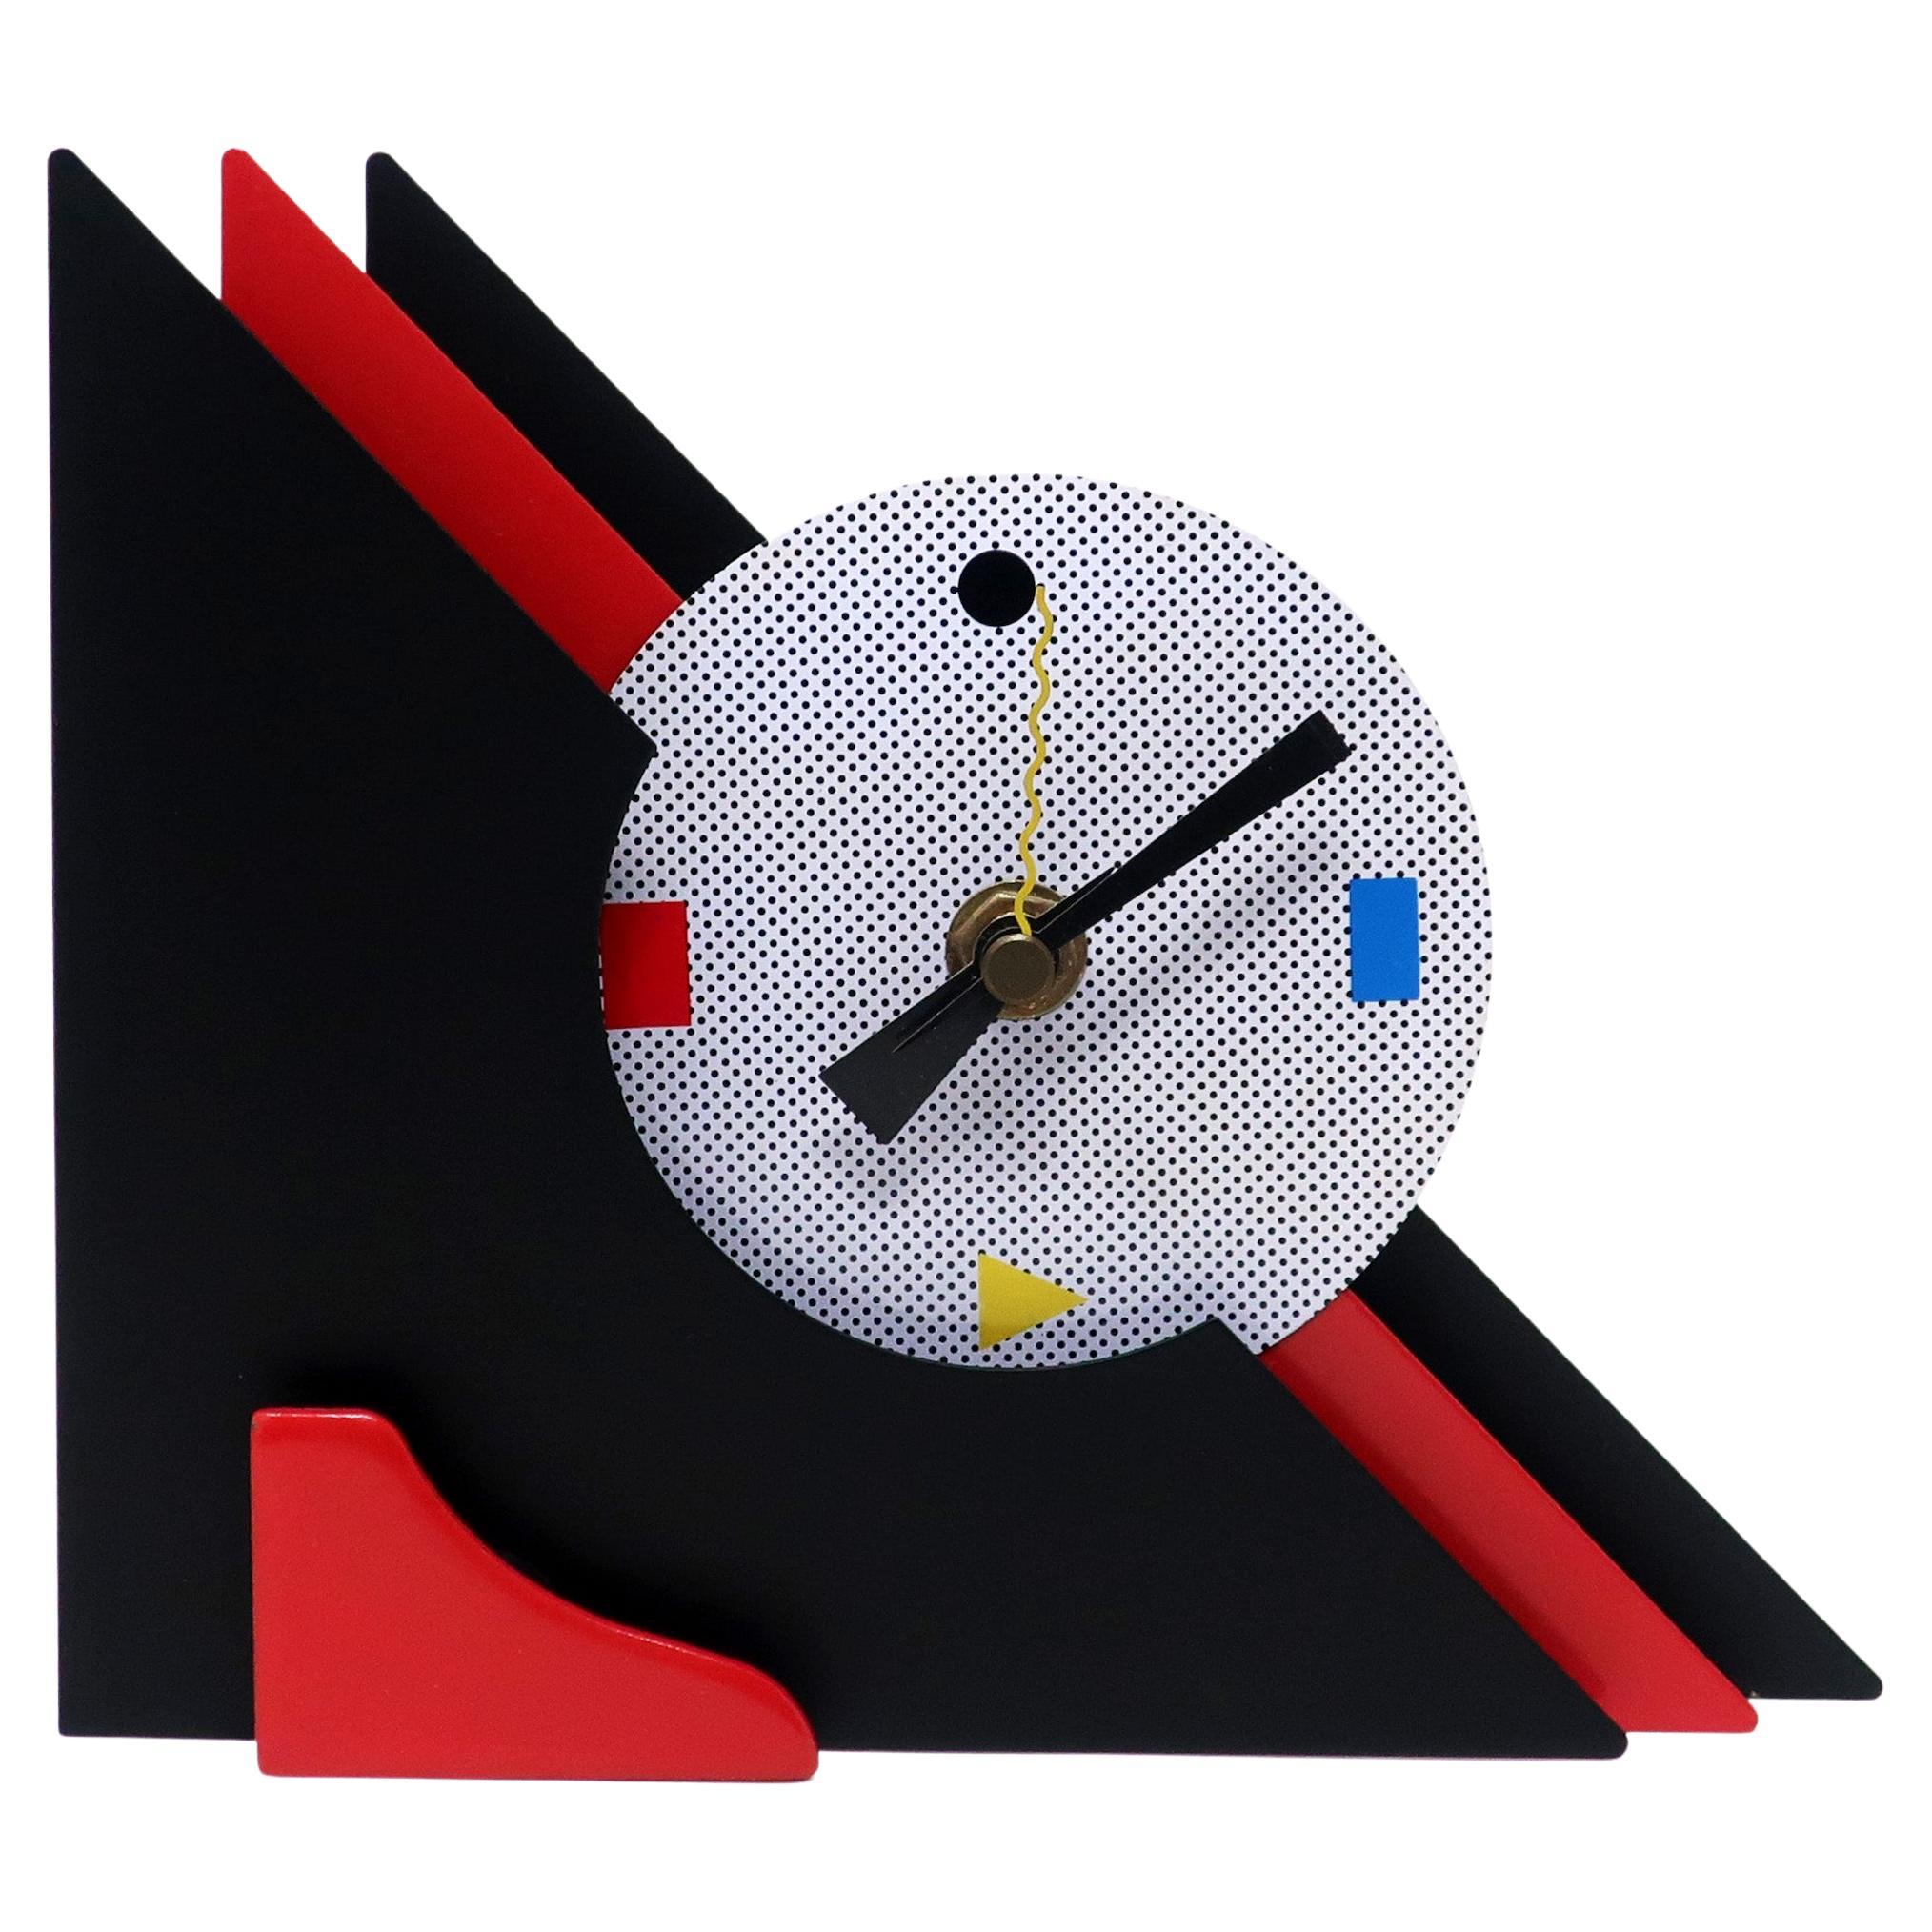 Horloge de bureau ou de cheminée des années 1980, rouge et noire, empilée